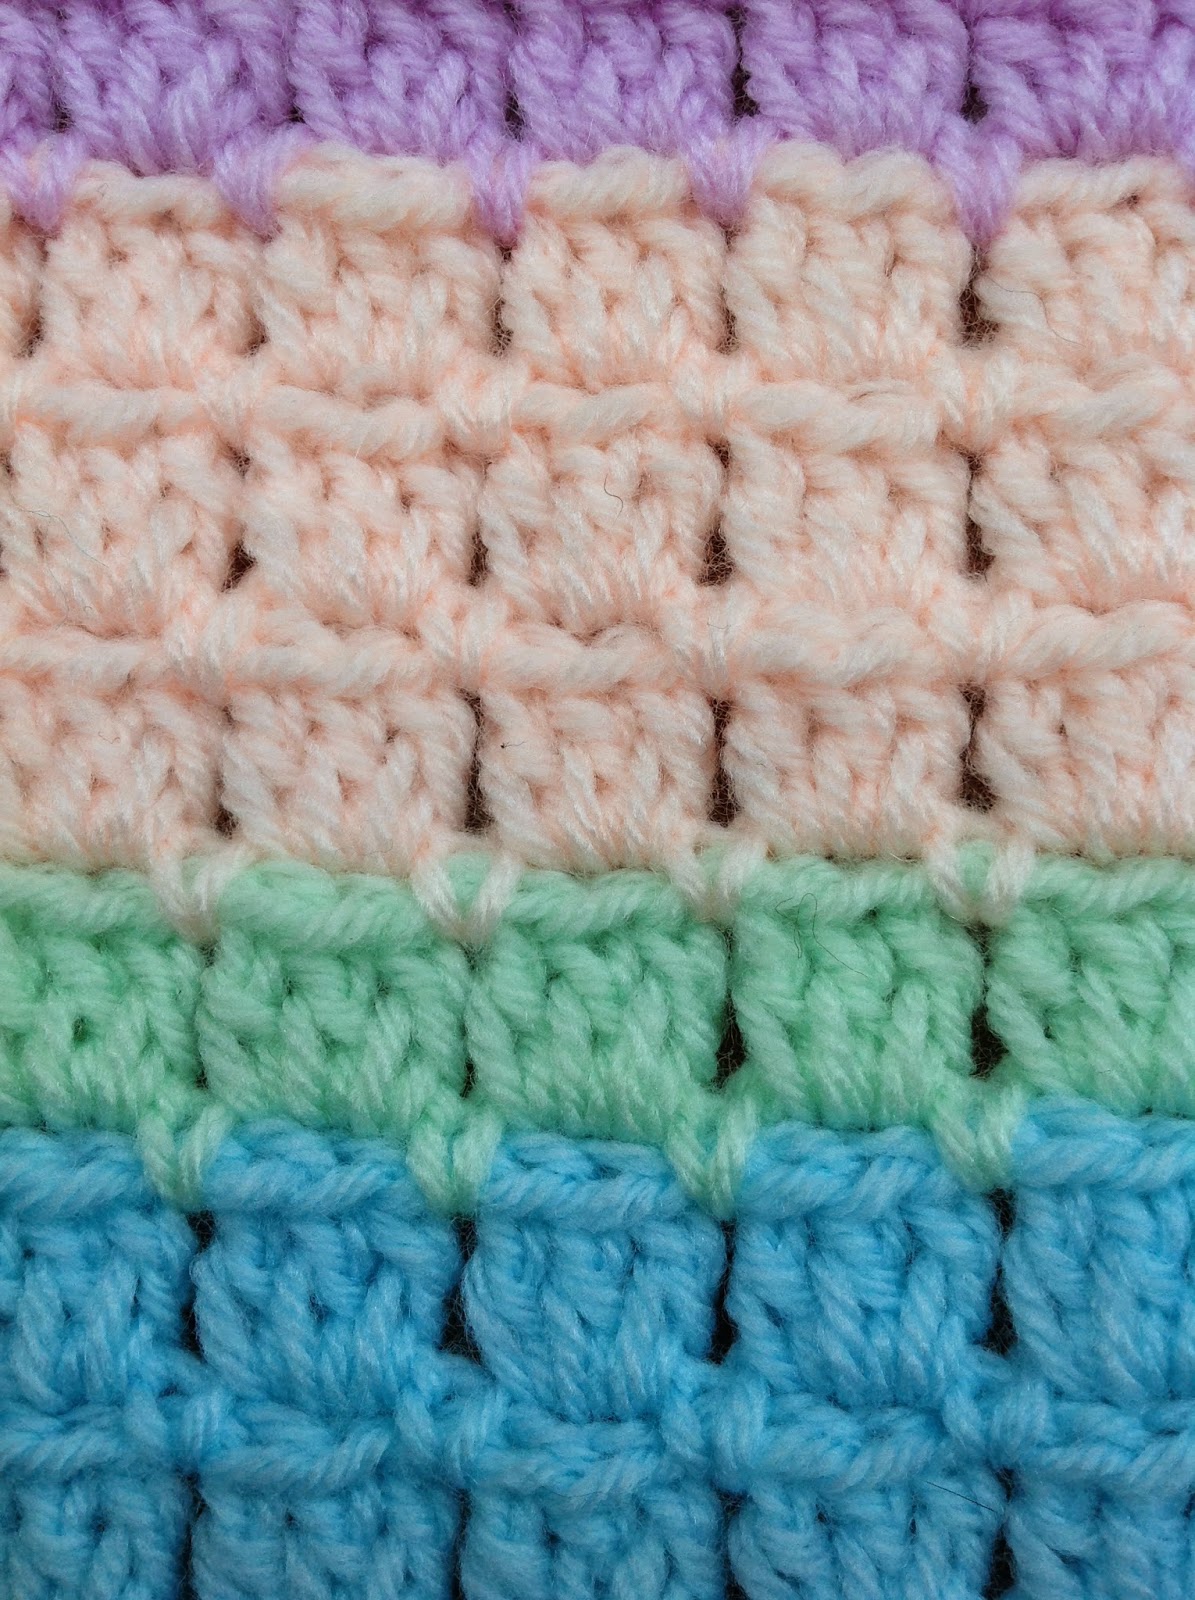 OYA's WORLD- Crochet-Knitting: Crochet: BLOCK STITCH Baby Blanket